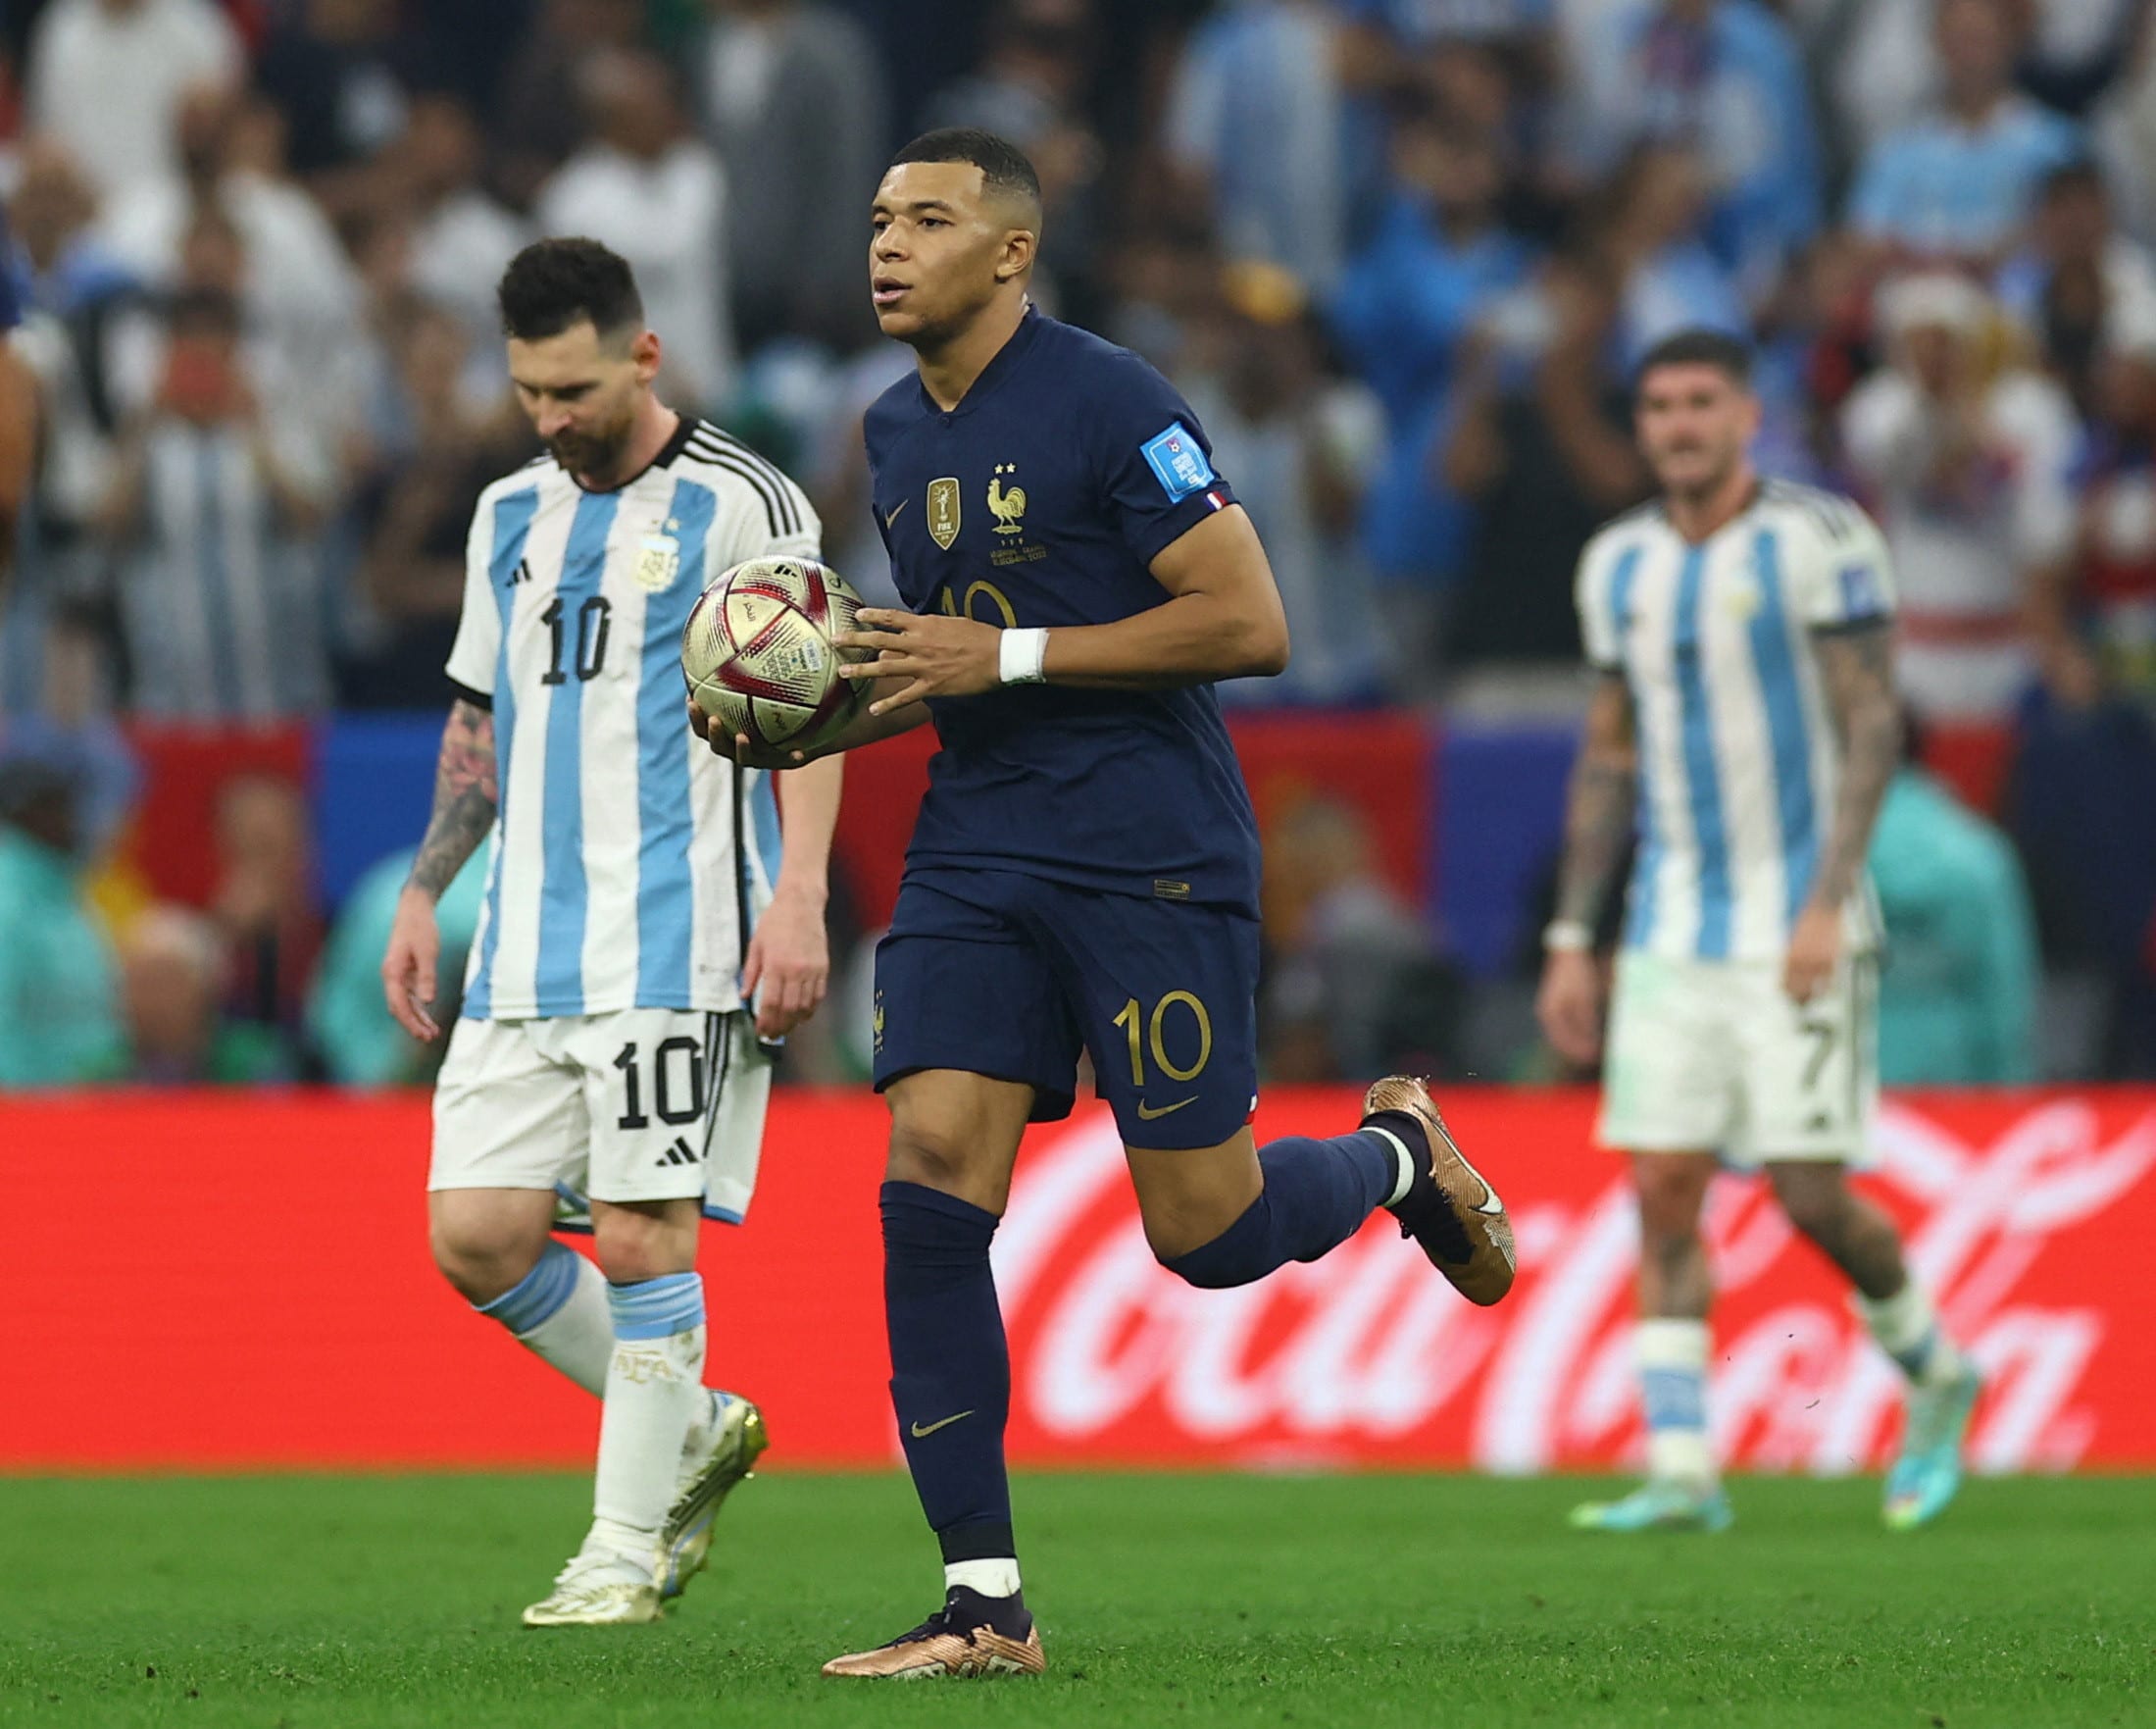 גמר מונדיאל 2022: קיליאן אמבפה שחקן נבחרת צרפת אחרי שער, ליאונל מסי שחקן נבחרת ארגנטינה מאוכזב